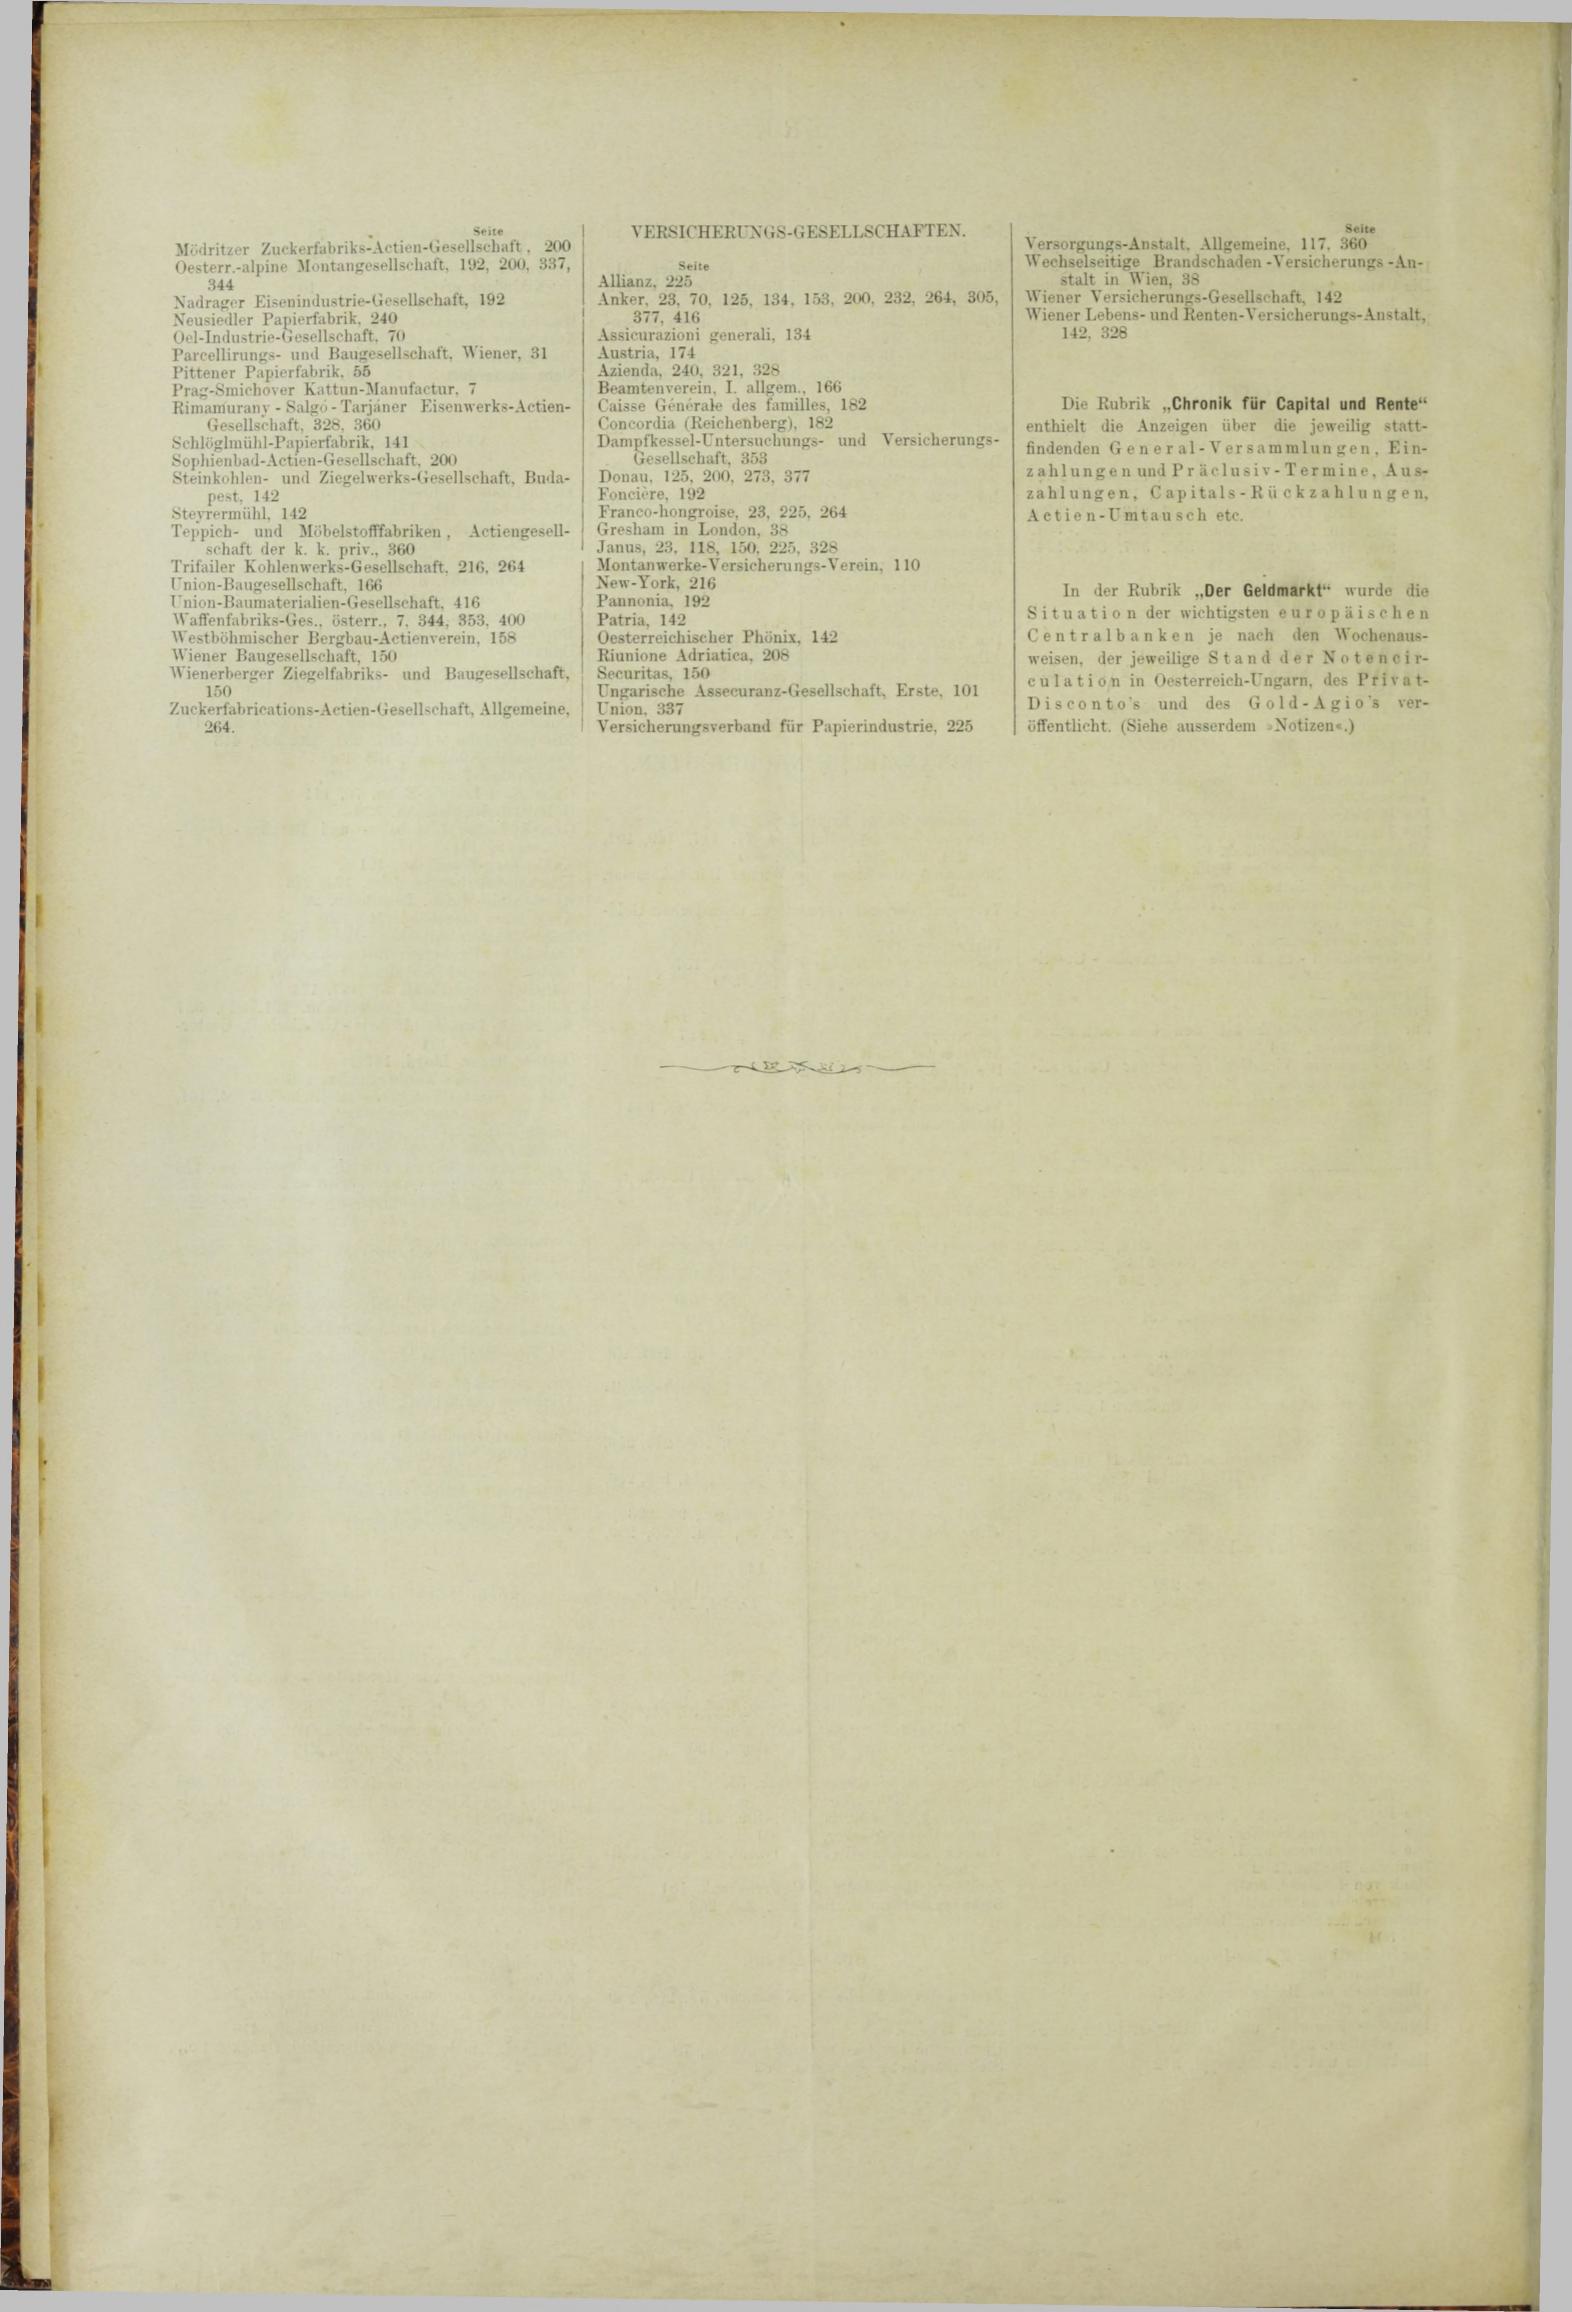 Der Tresor 31.05.1883 - Seite 12